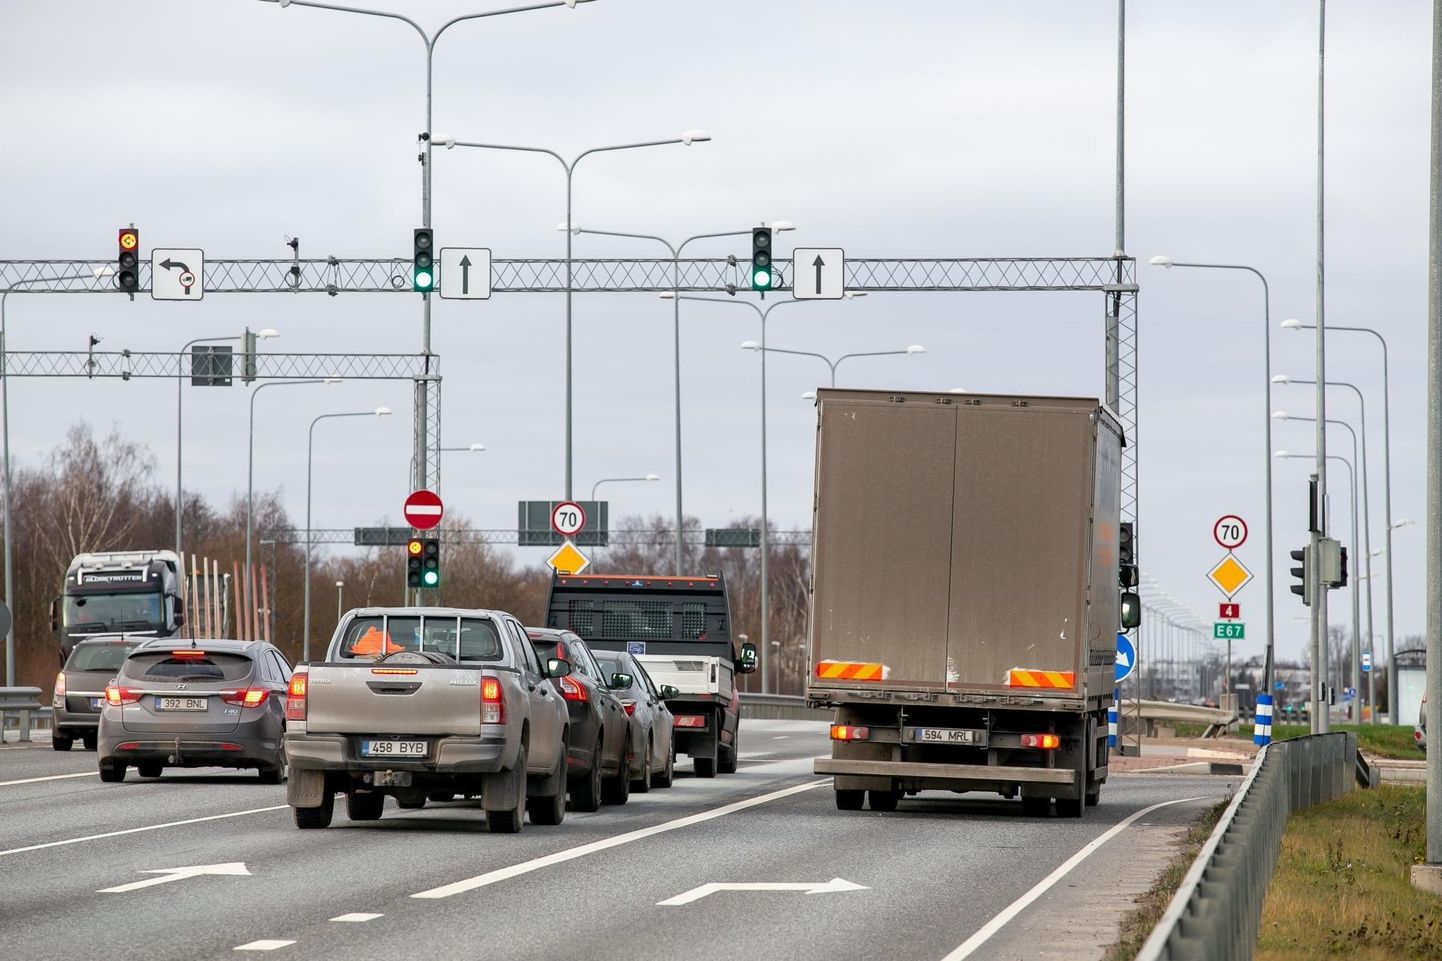 Uuringust selgus, et mitmel
Pärnu Ehitajate tee ristmikul on liikluskoormus viie aasta taguse ajaga võrreldes kasvanud. 